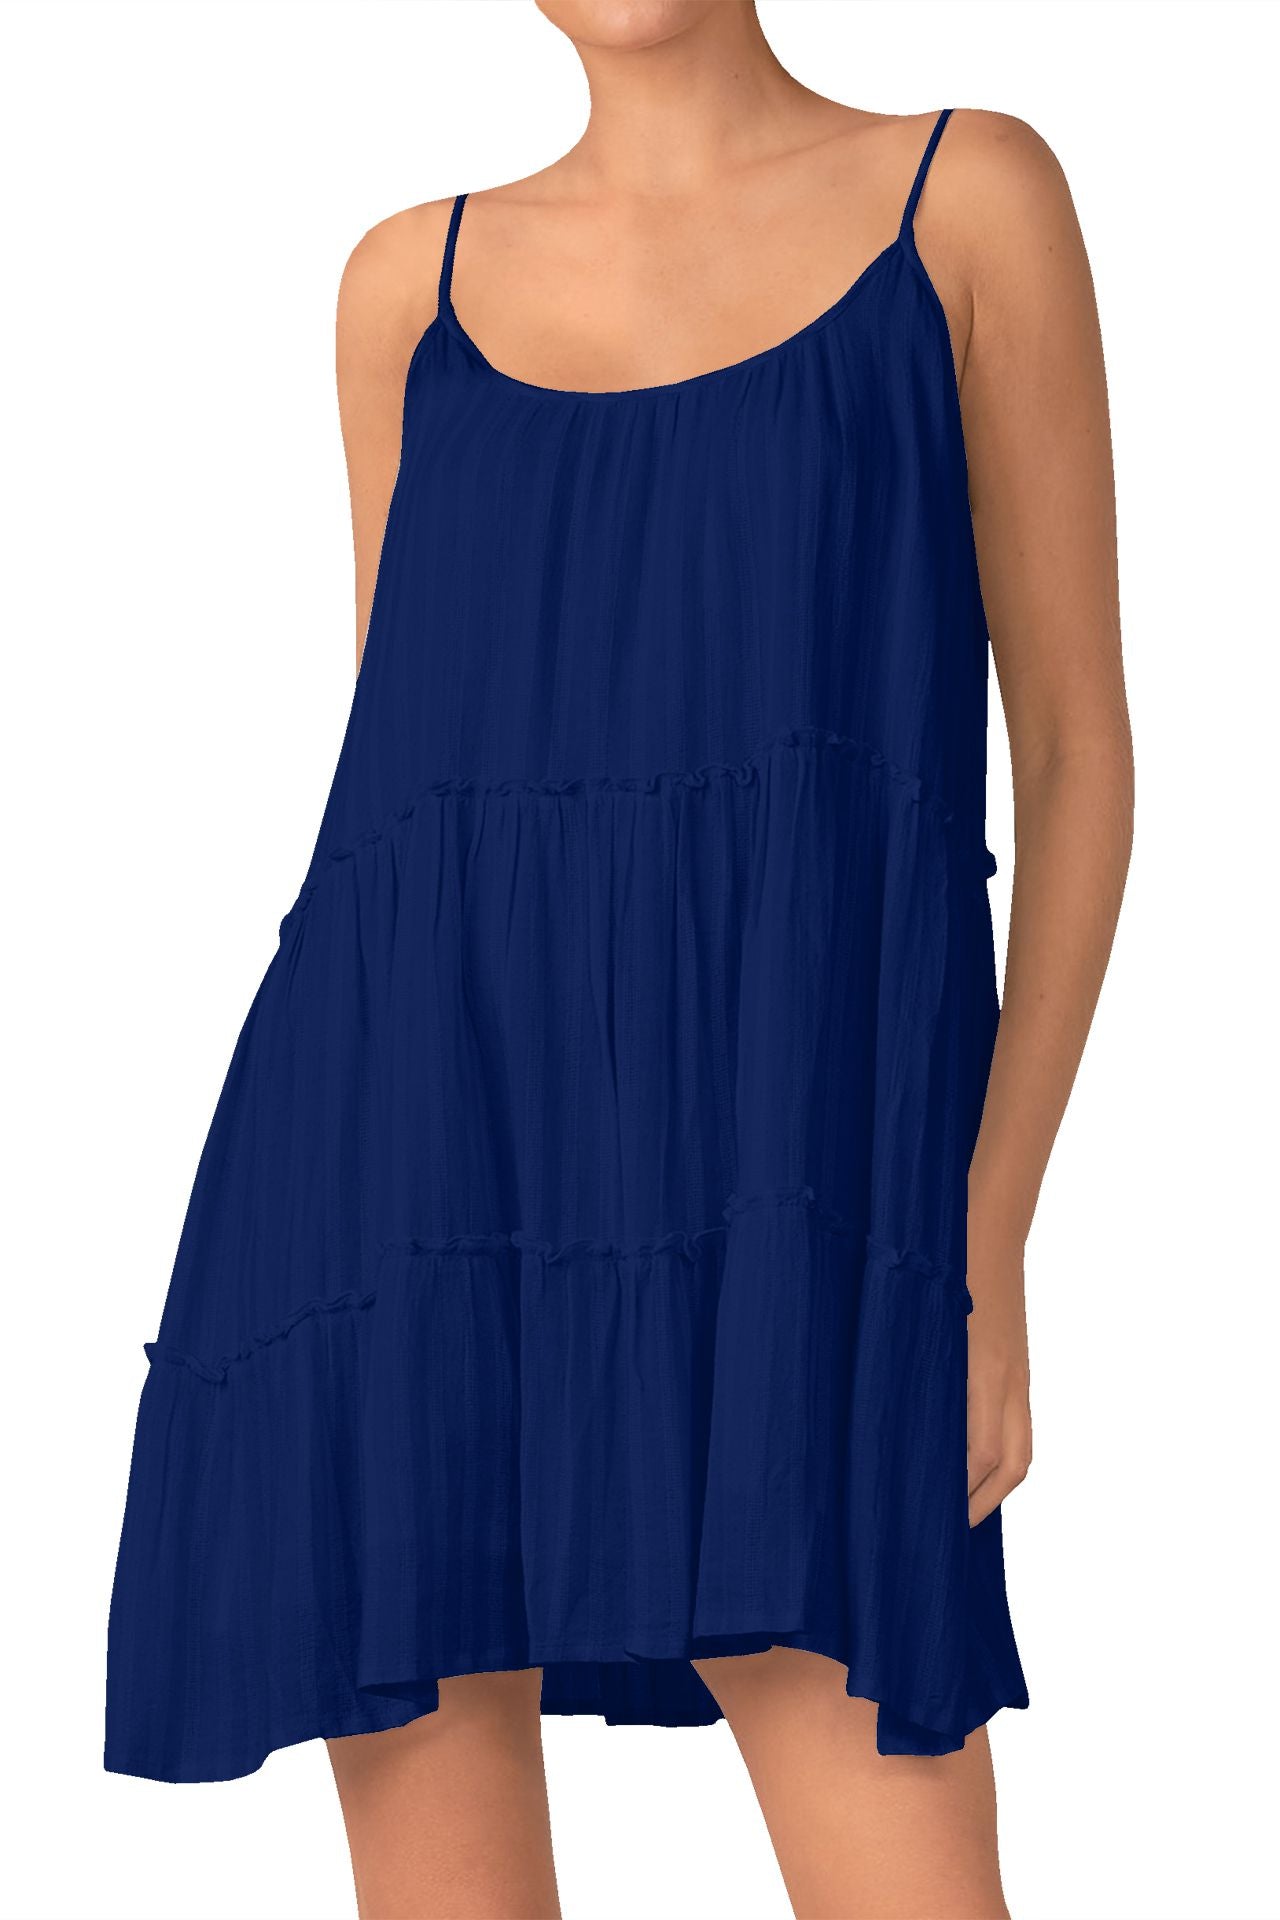 Short Cami Dress in Solid Navy Blue – Shahida Parides